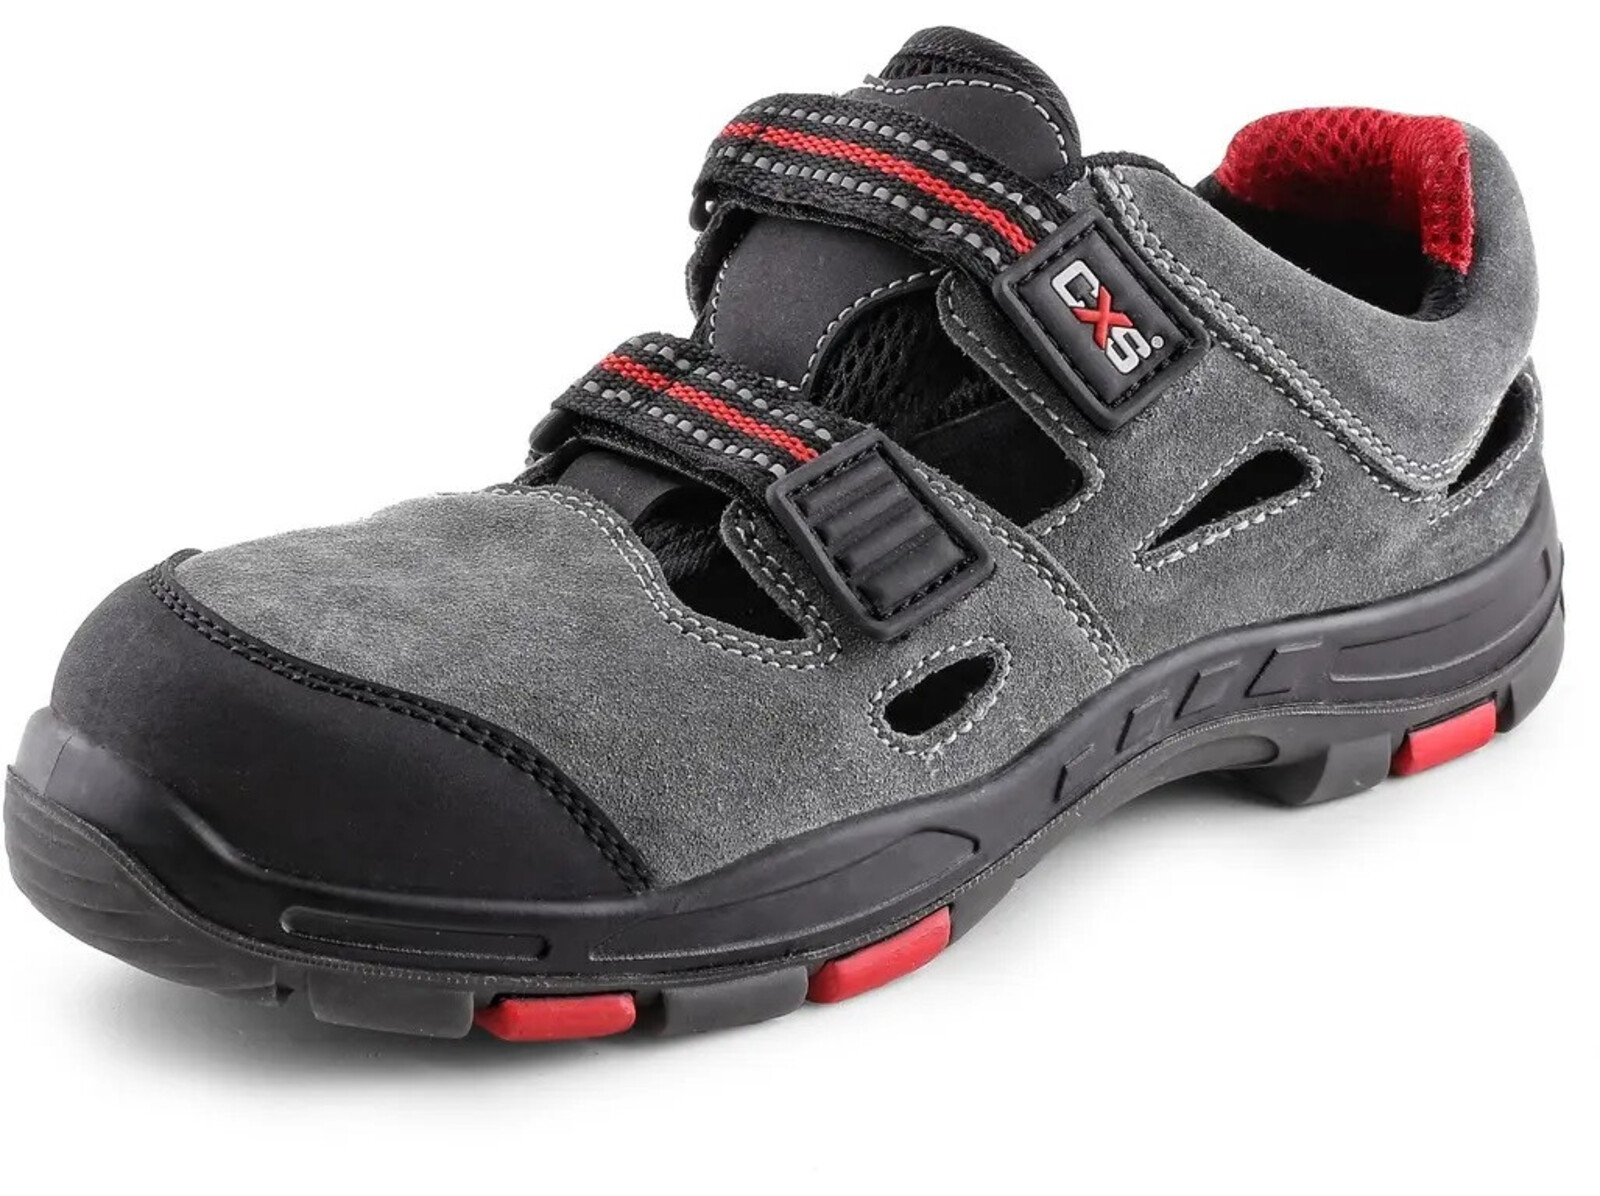 Bezpečnostné sandále CXS Rock Phyllite S1P SRA HRO MF - veľkosť: 37, farba: sivá/červená